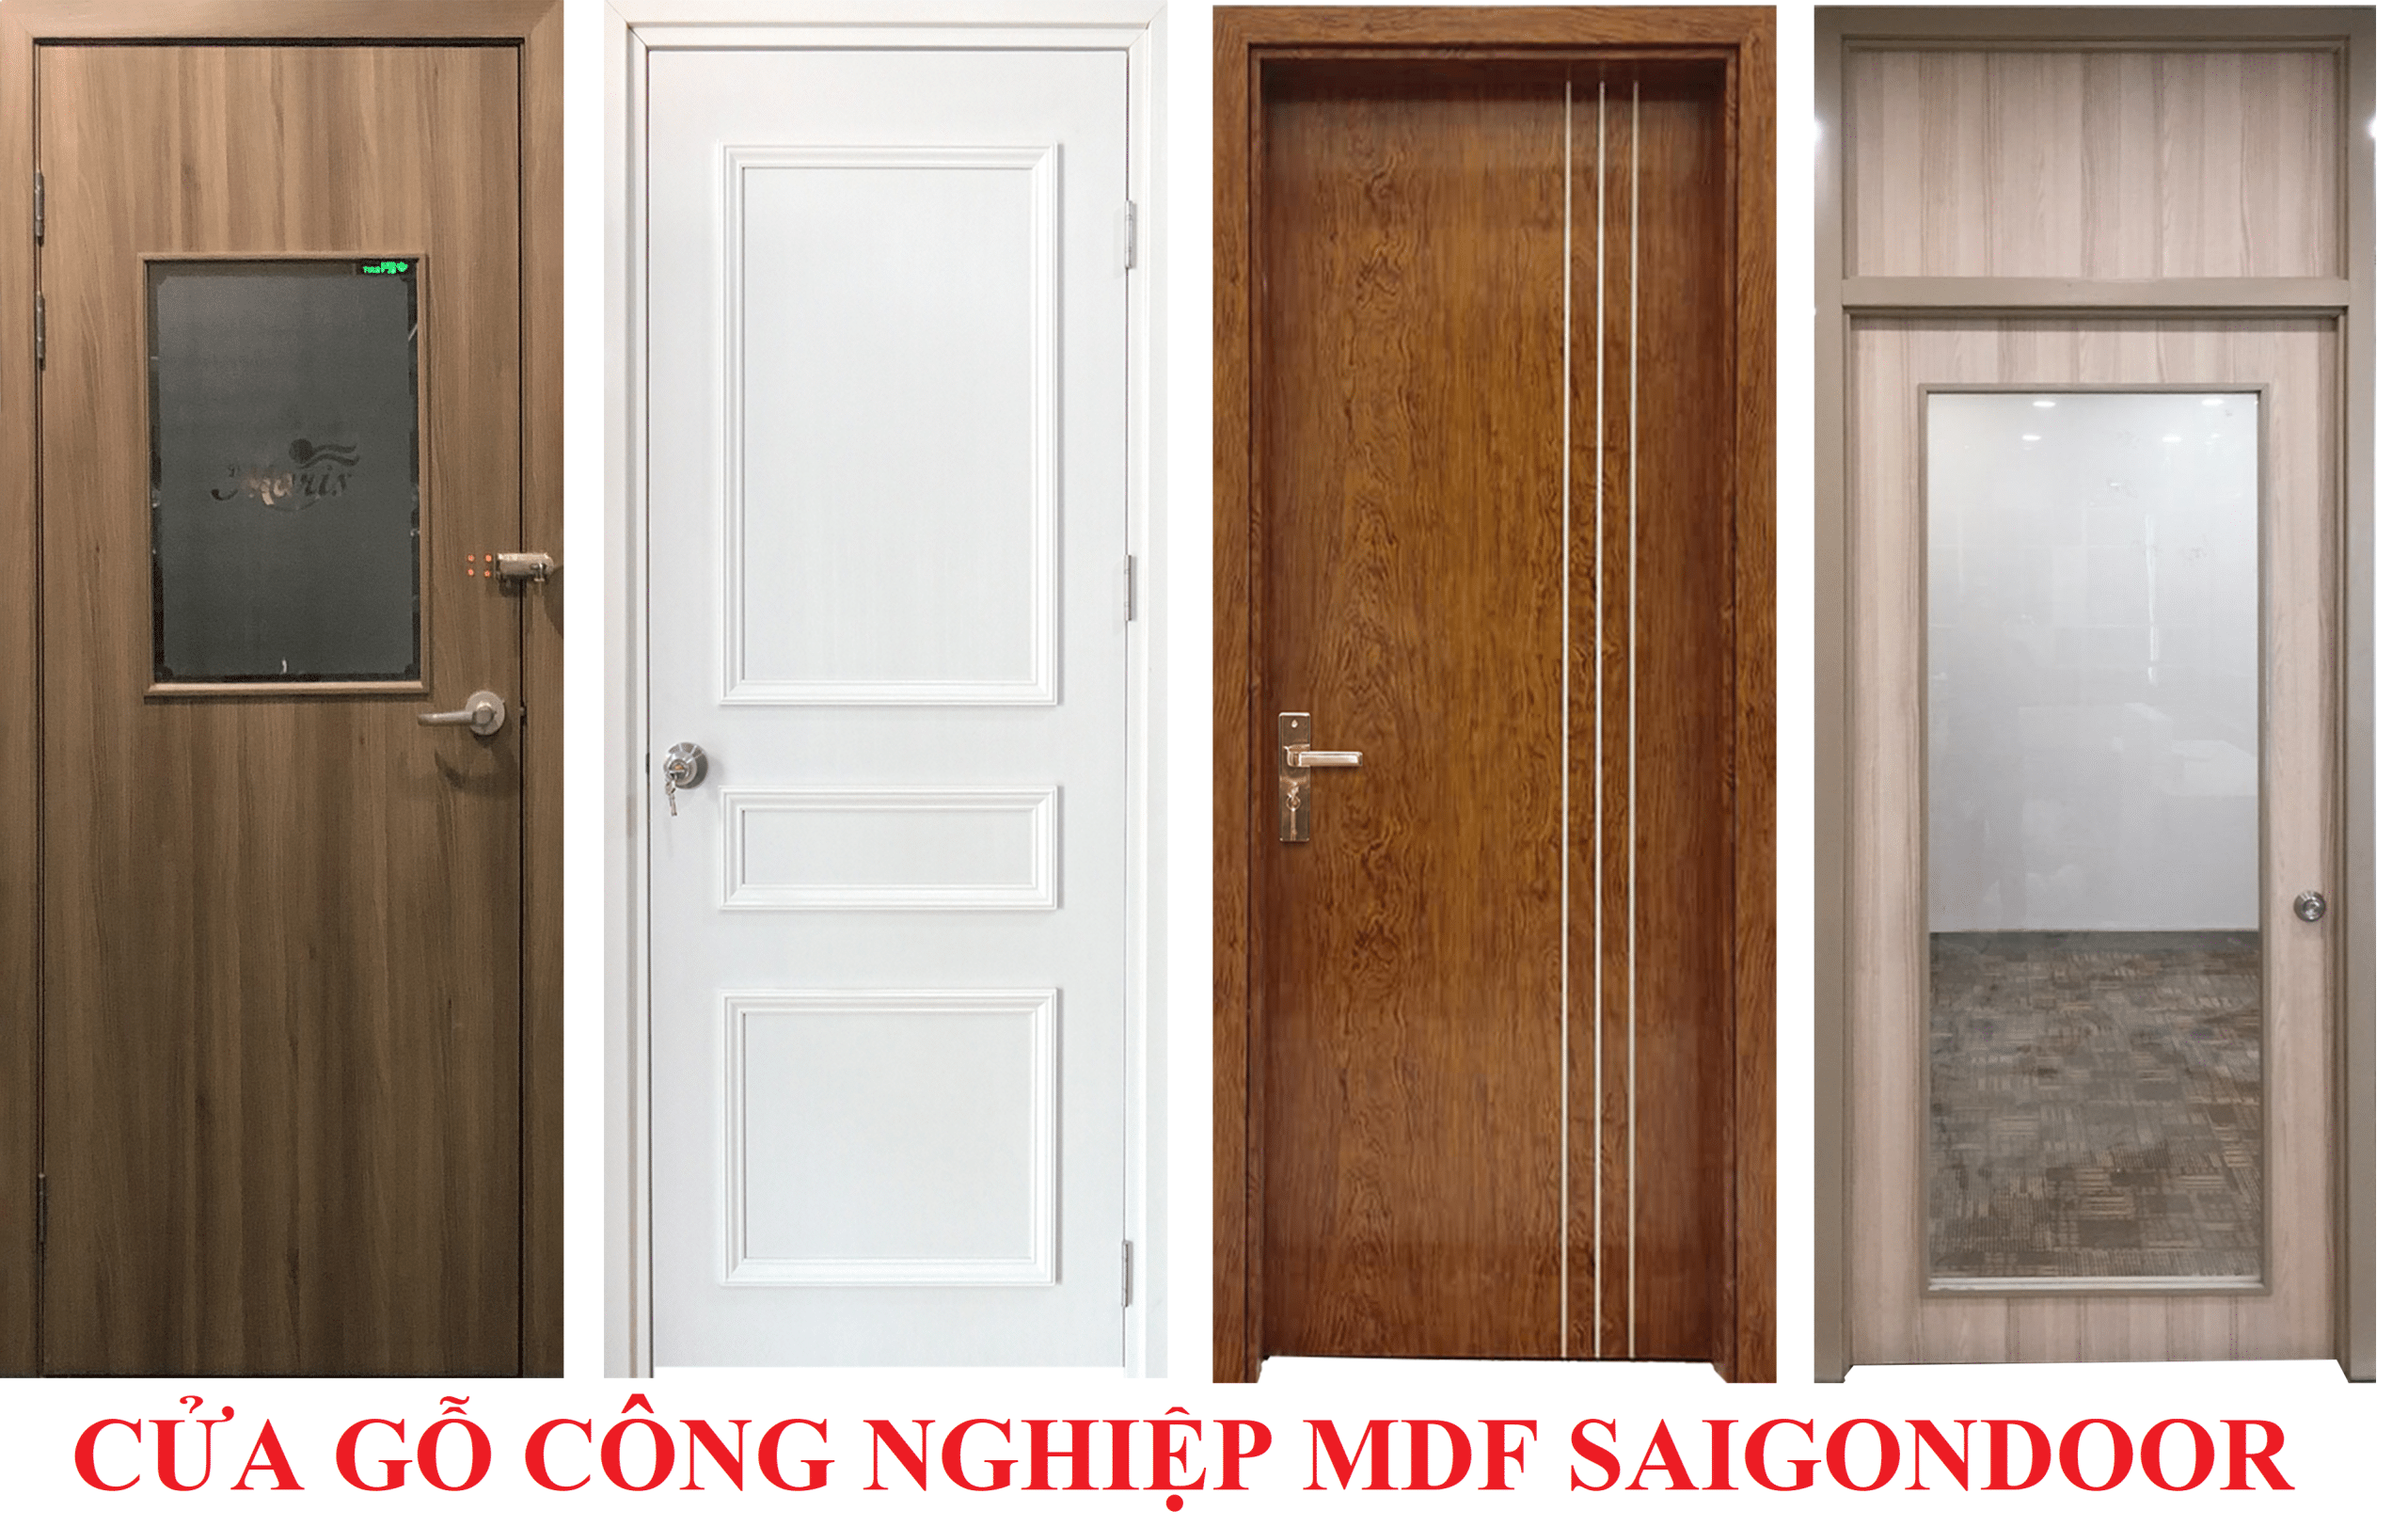 Báo giá cửa gỗ công nghiệp MDF Veneer rẻ nhất Cua-go-cong-nghiep-SGD-Melamine-P1G11